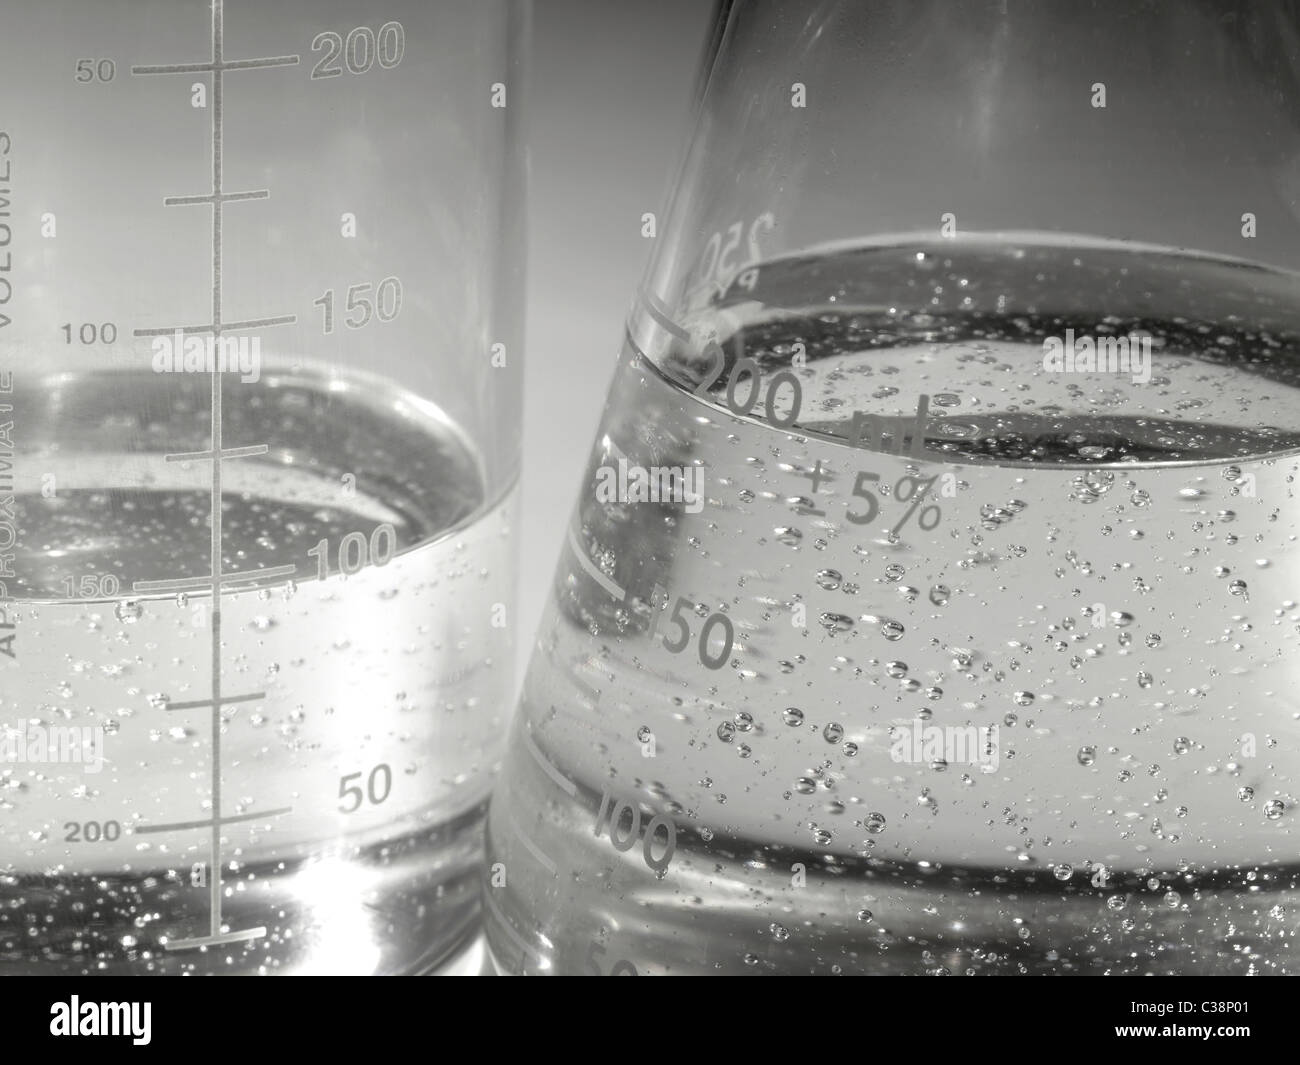 Becher im Labor mit kochendem Flüssigkeit & Luftblasen Stockfoto